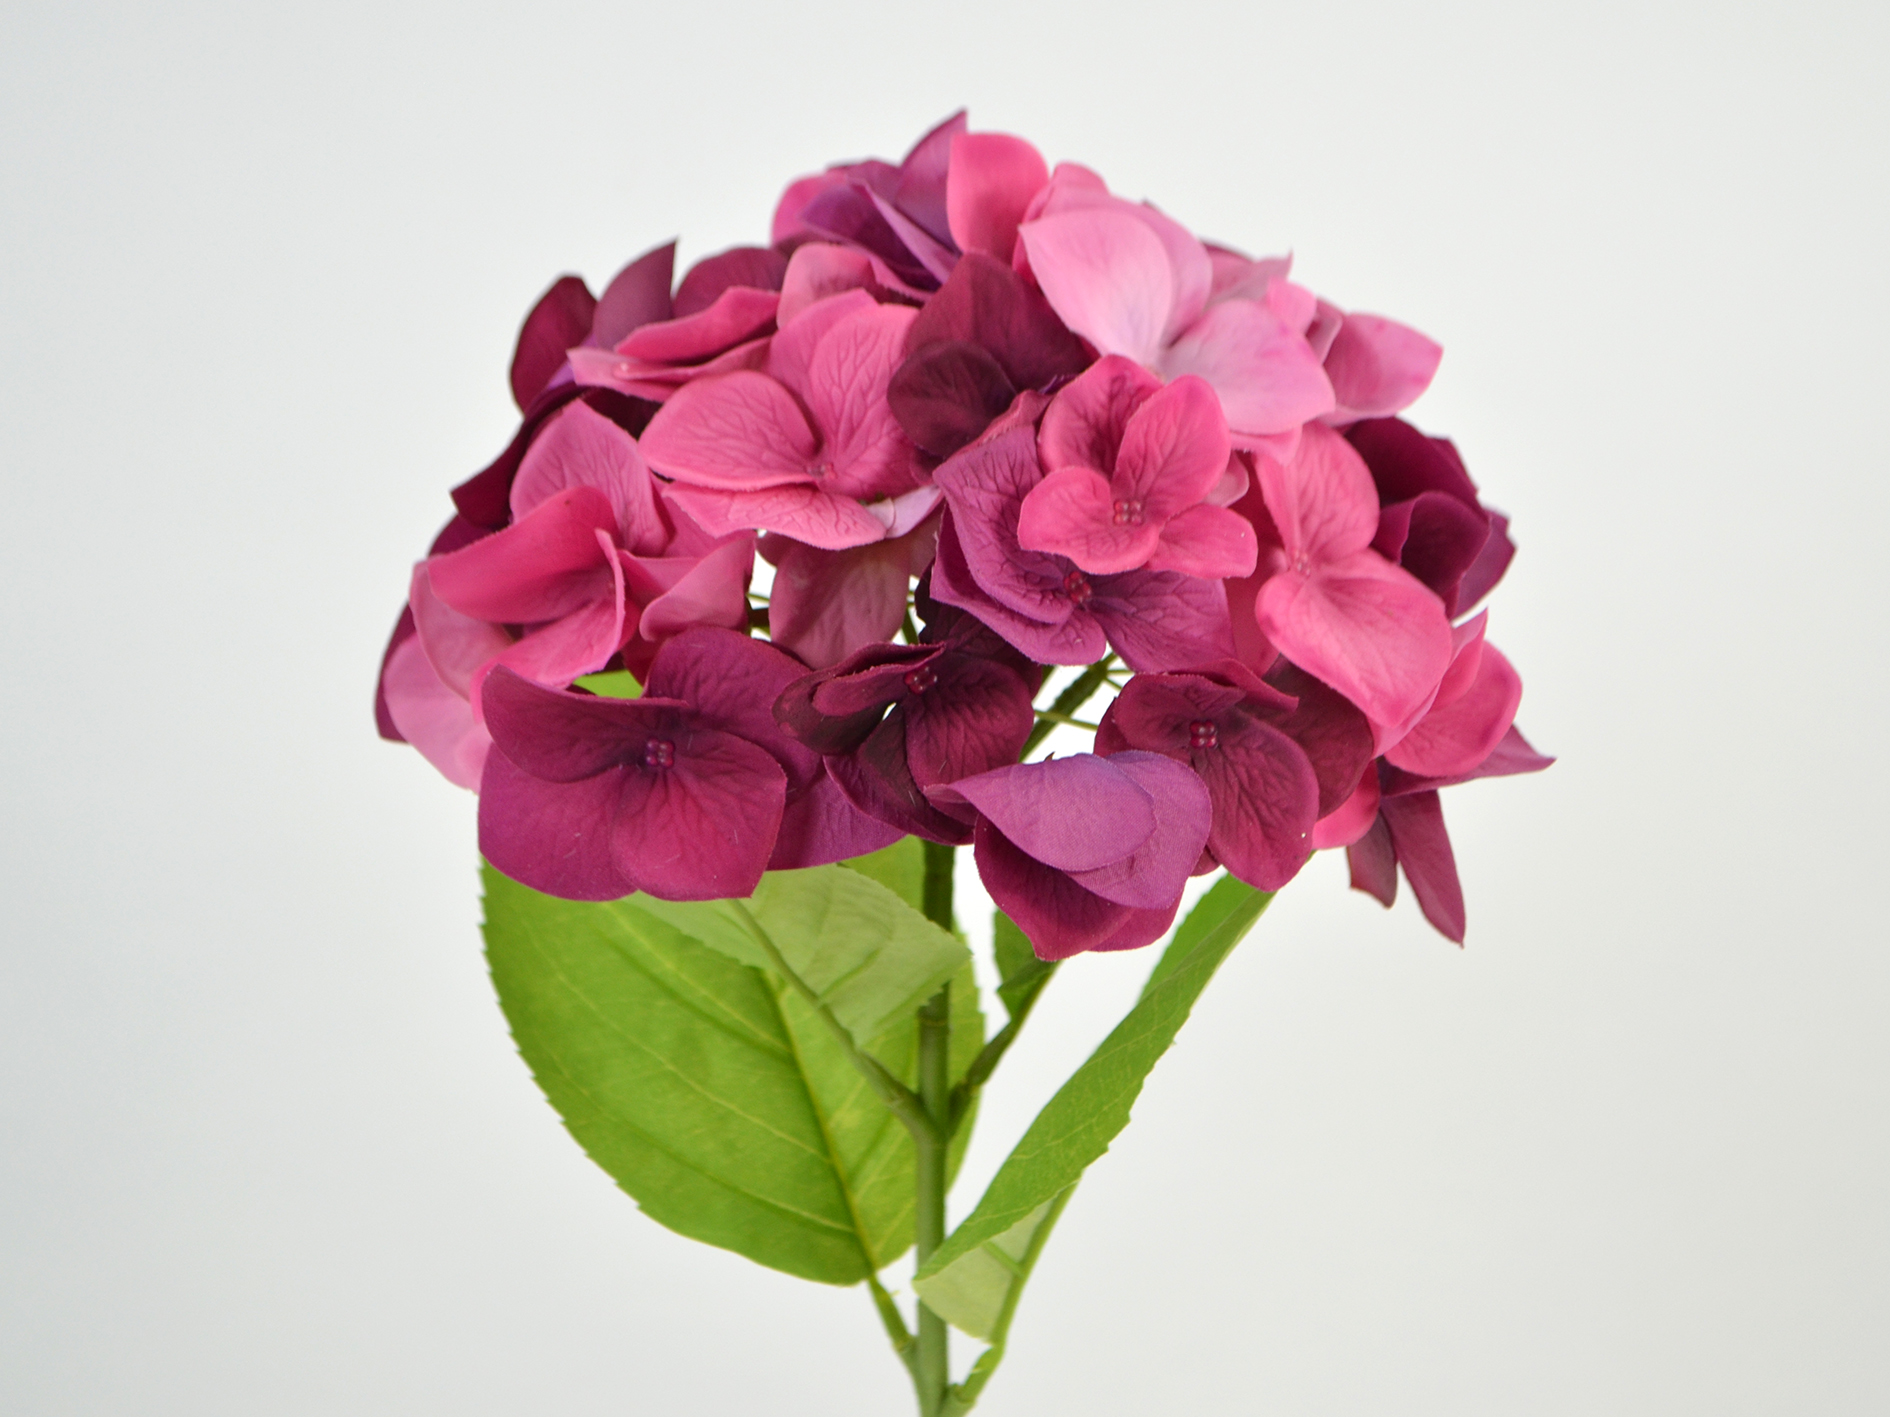 Hortensie, natural touch, 46cm, fuchsia-pink